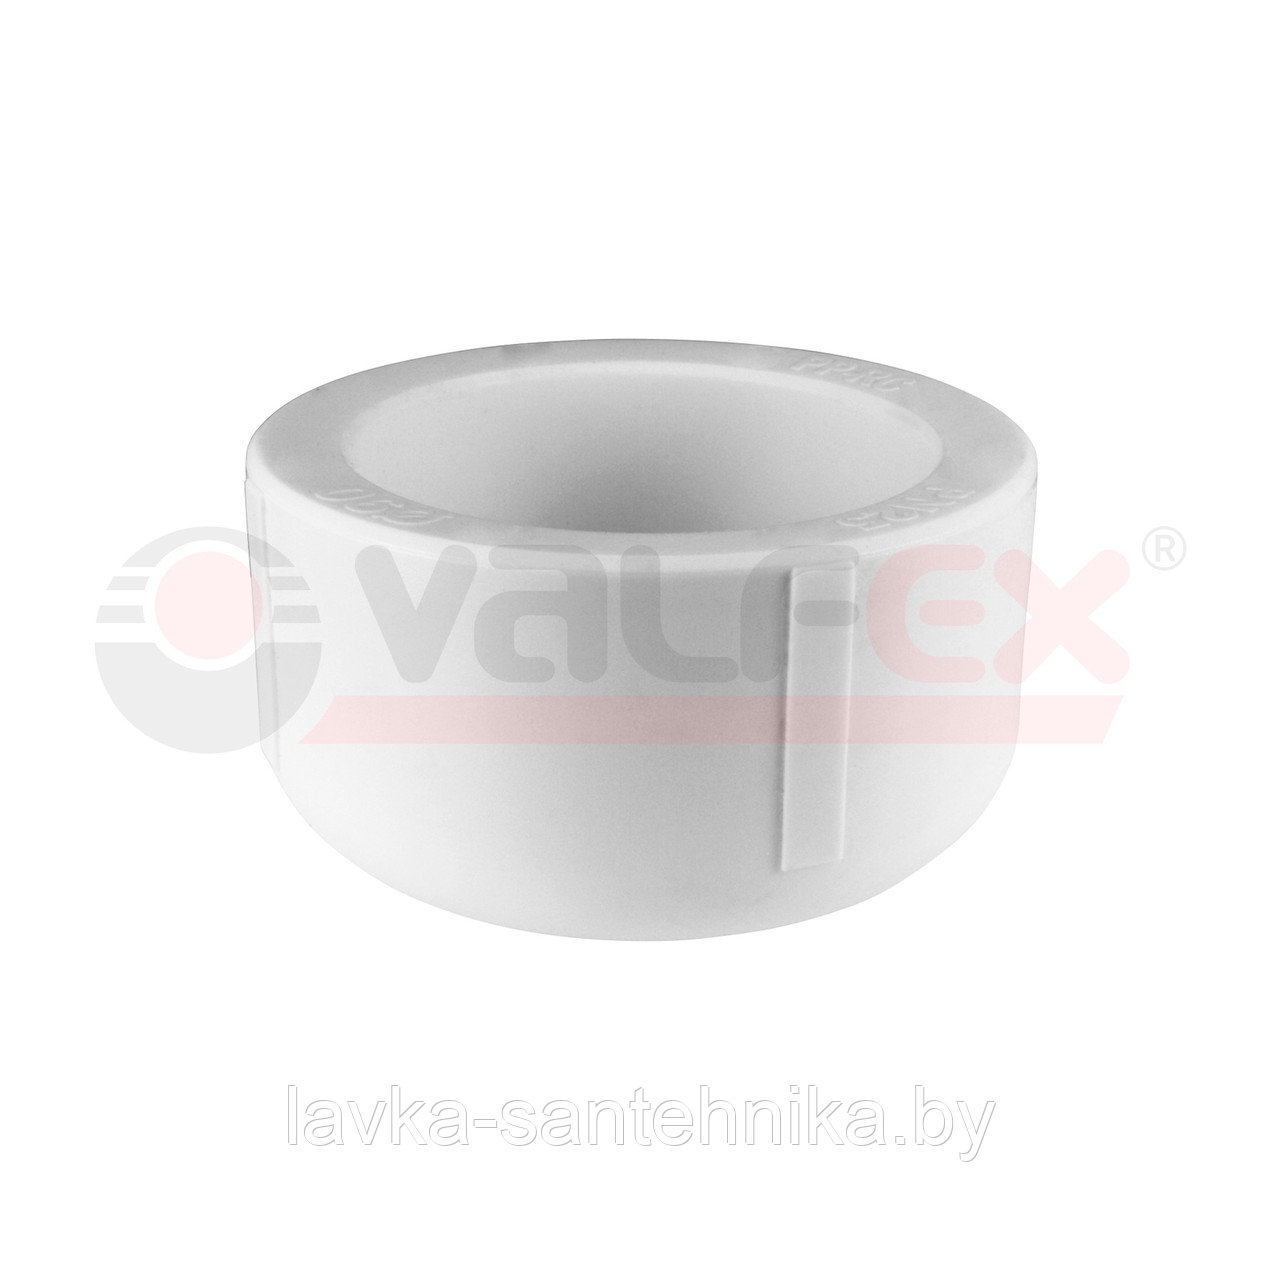 Заглушка 25 мм полипропиленовая Valfex (цвет: серый)